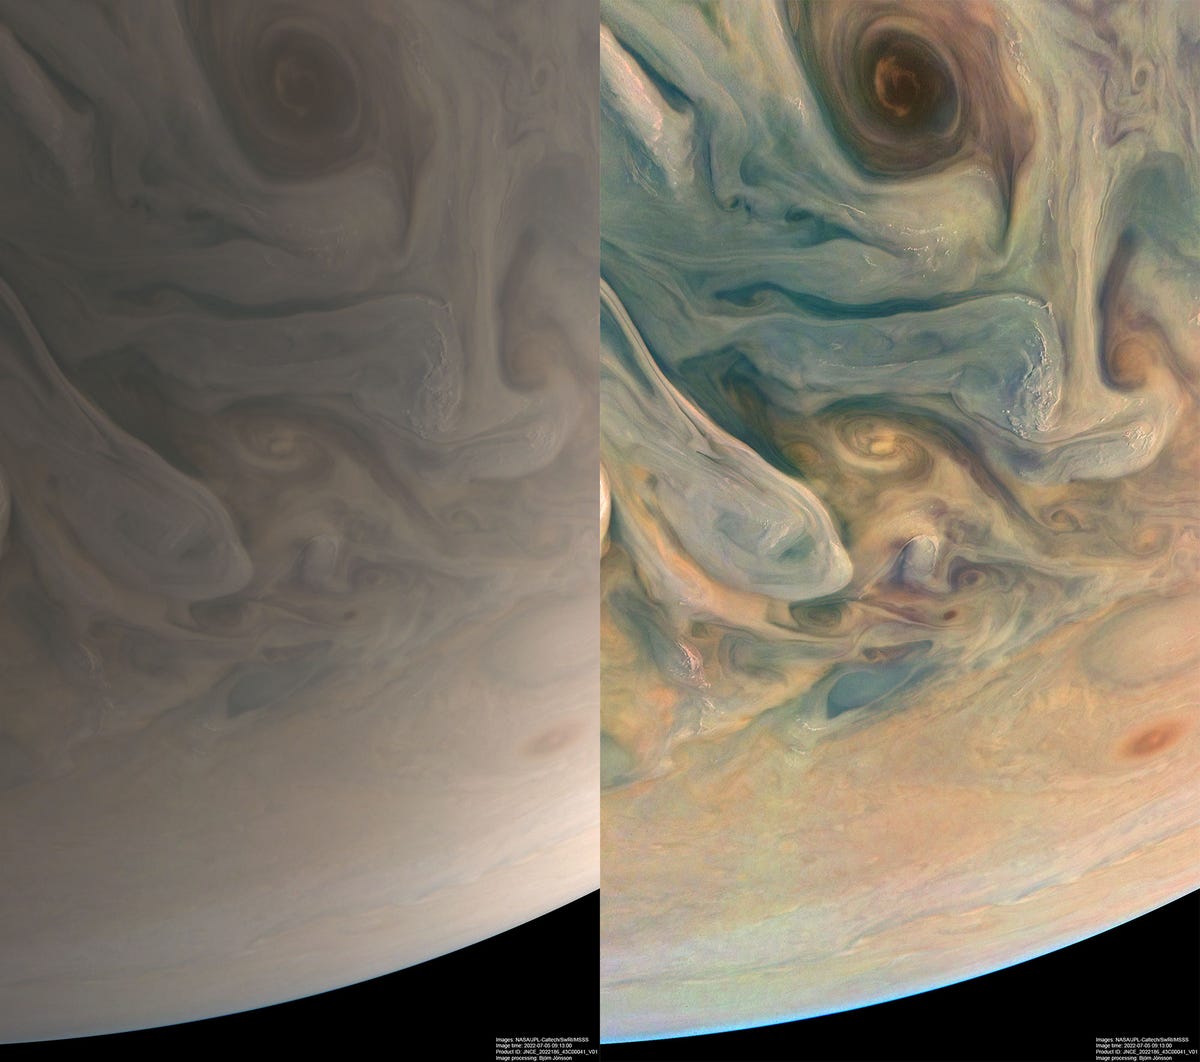 على اليسار نسخة بيج ناعمة من كوكب المشتري.  على اليمين توجد نفس الصورة ، باستثناء درجات الأزرق والبرتقالي والأصفر.